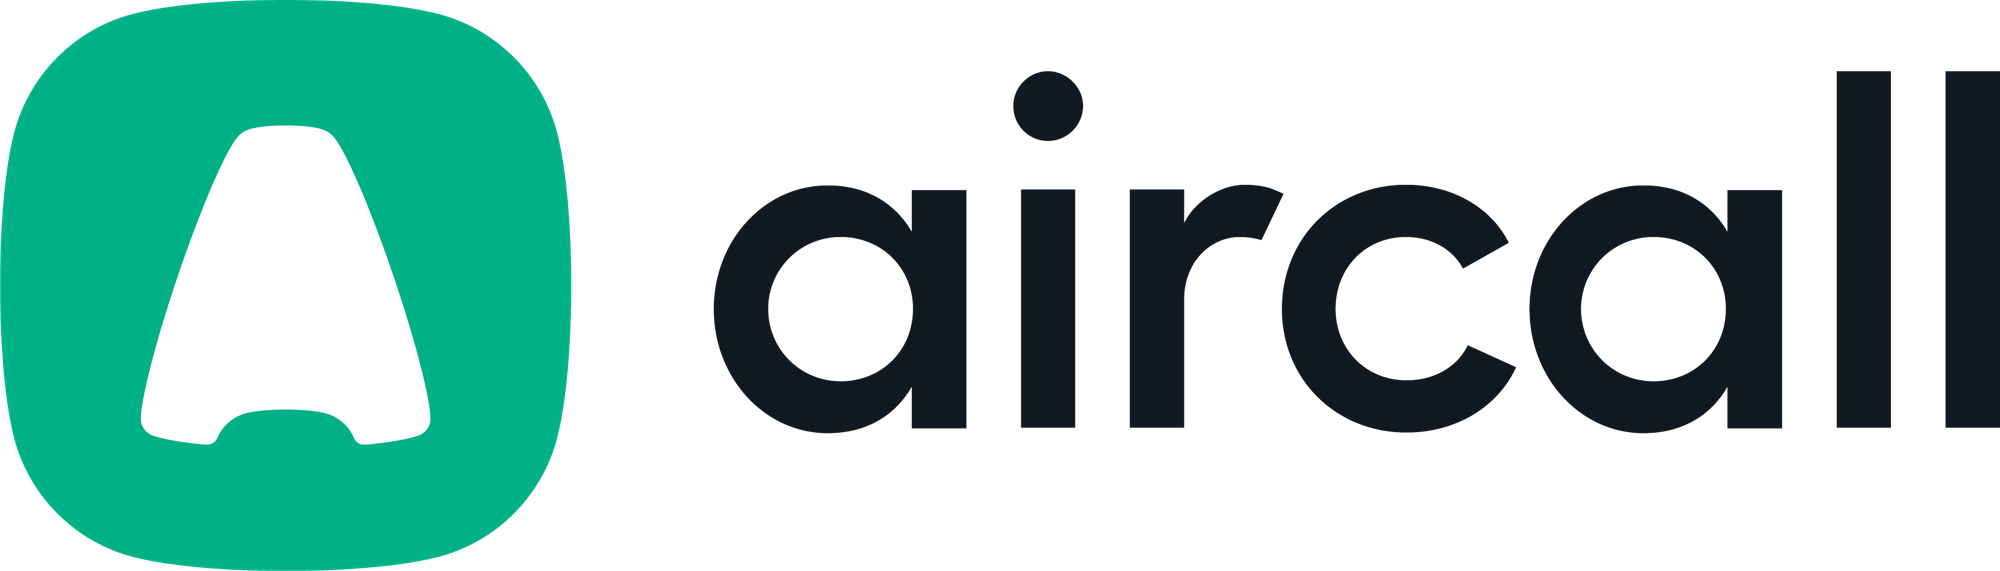 Logo Aircall